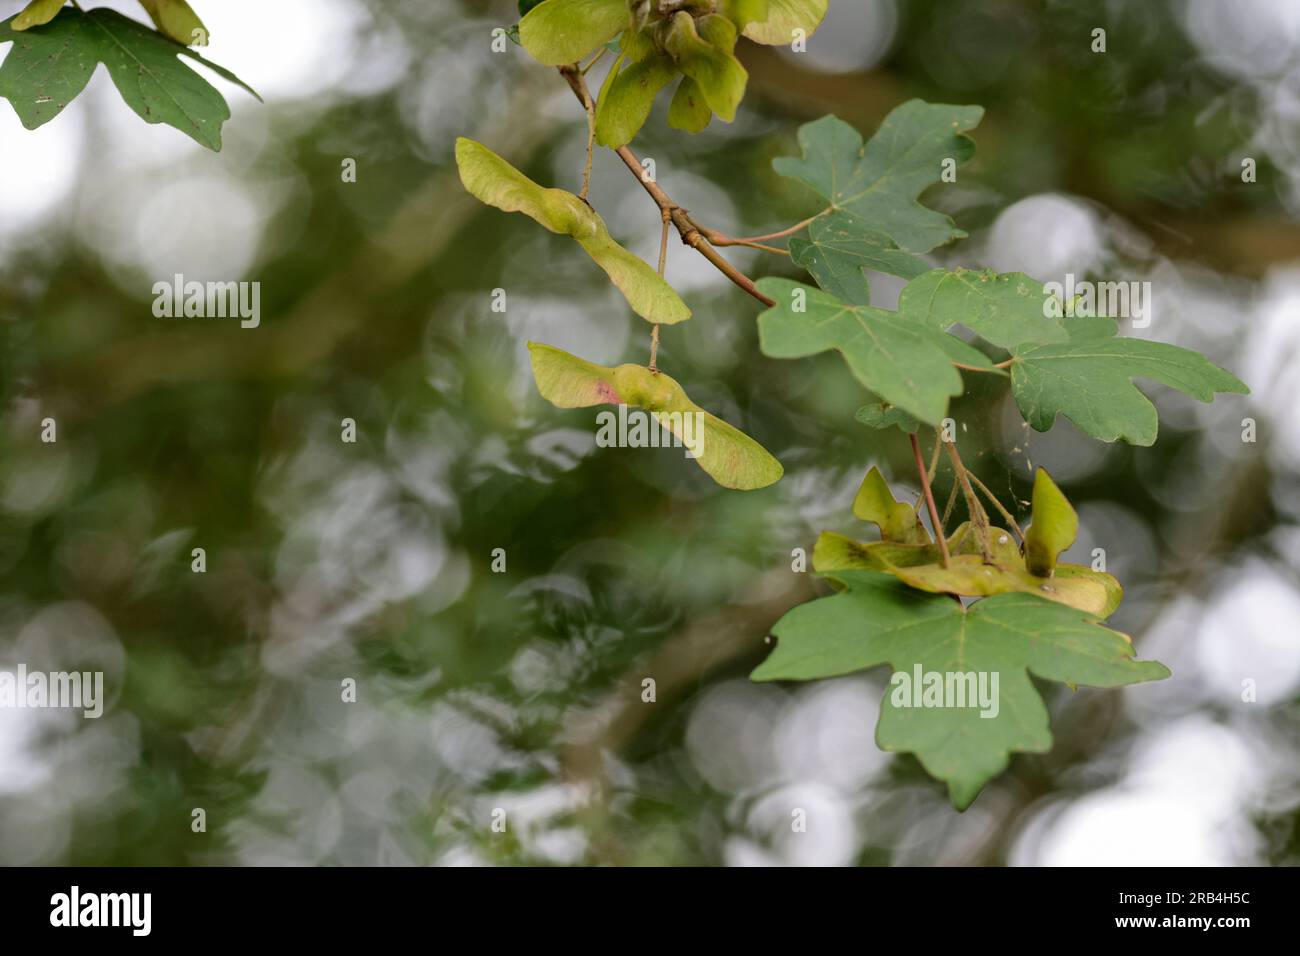 Sycamore Acer pseudoplatanus, cinq feuilles lobées avec des marges dentées avec des gousses de graines comme paires ailées action d'hélicoptère en tombant ensemble ou fendues Banque D'Images